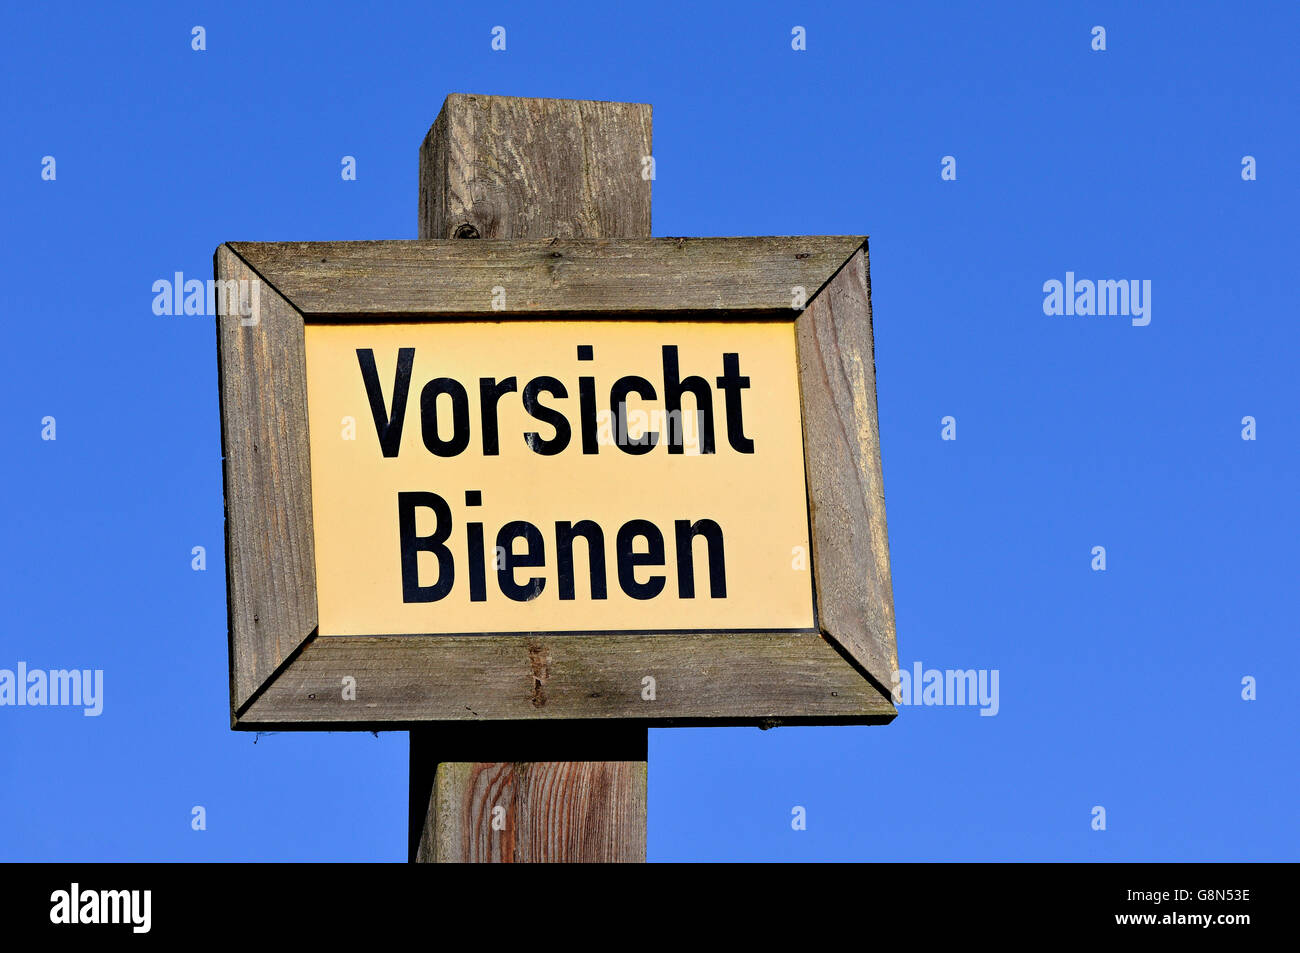 Warning sign, Vorsicht Bienen, caution bees, North Rhine-Westphalia, Germany Stock Photo